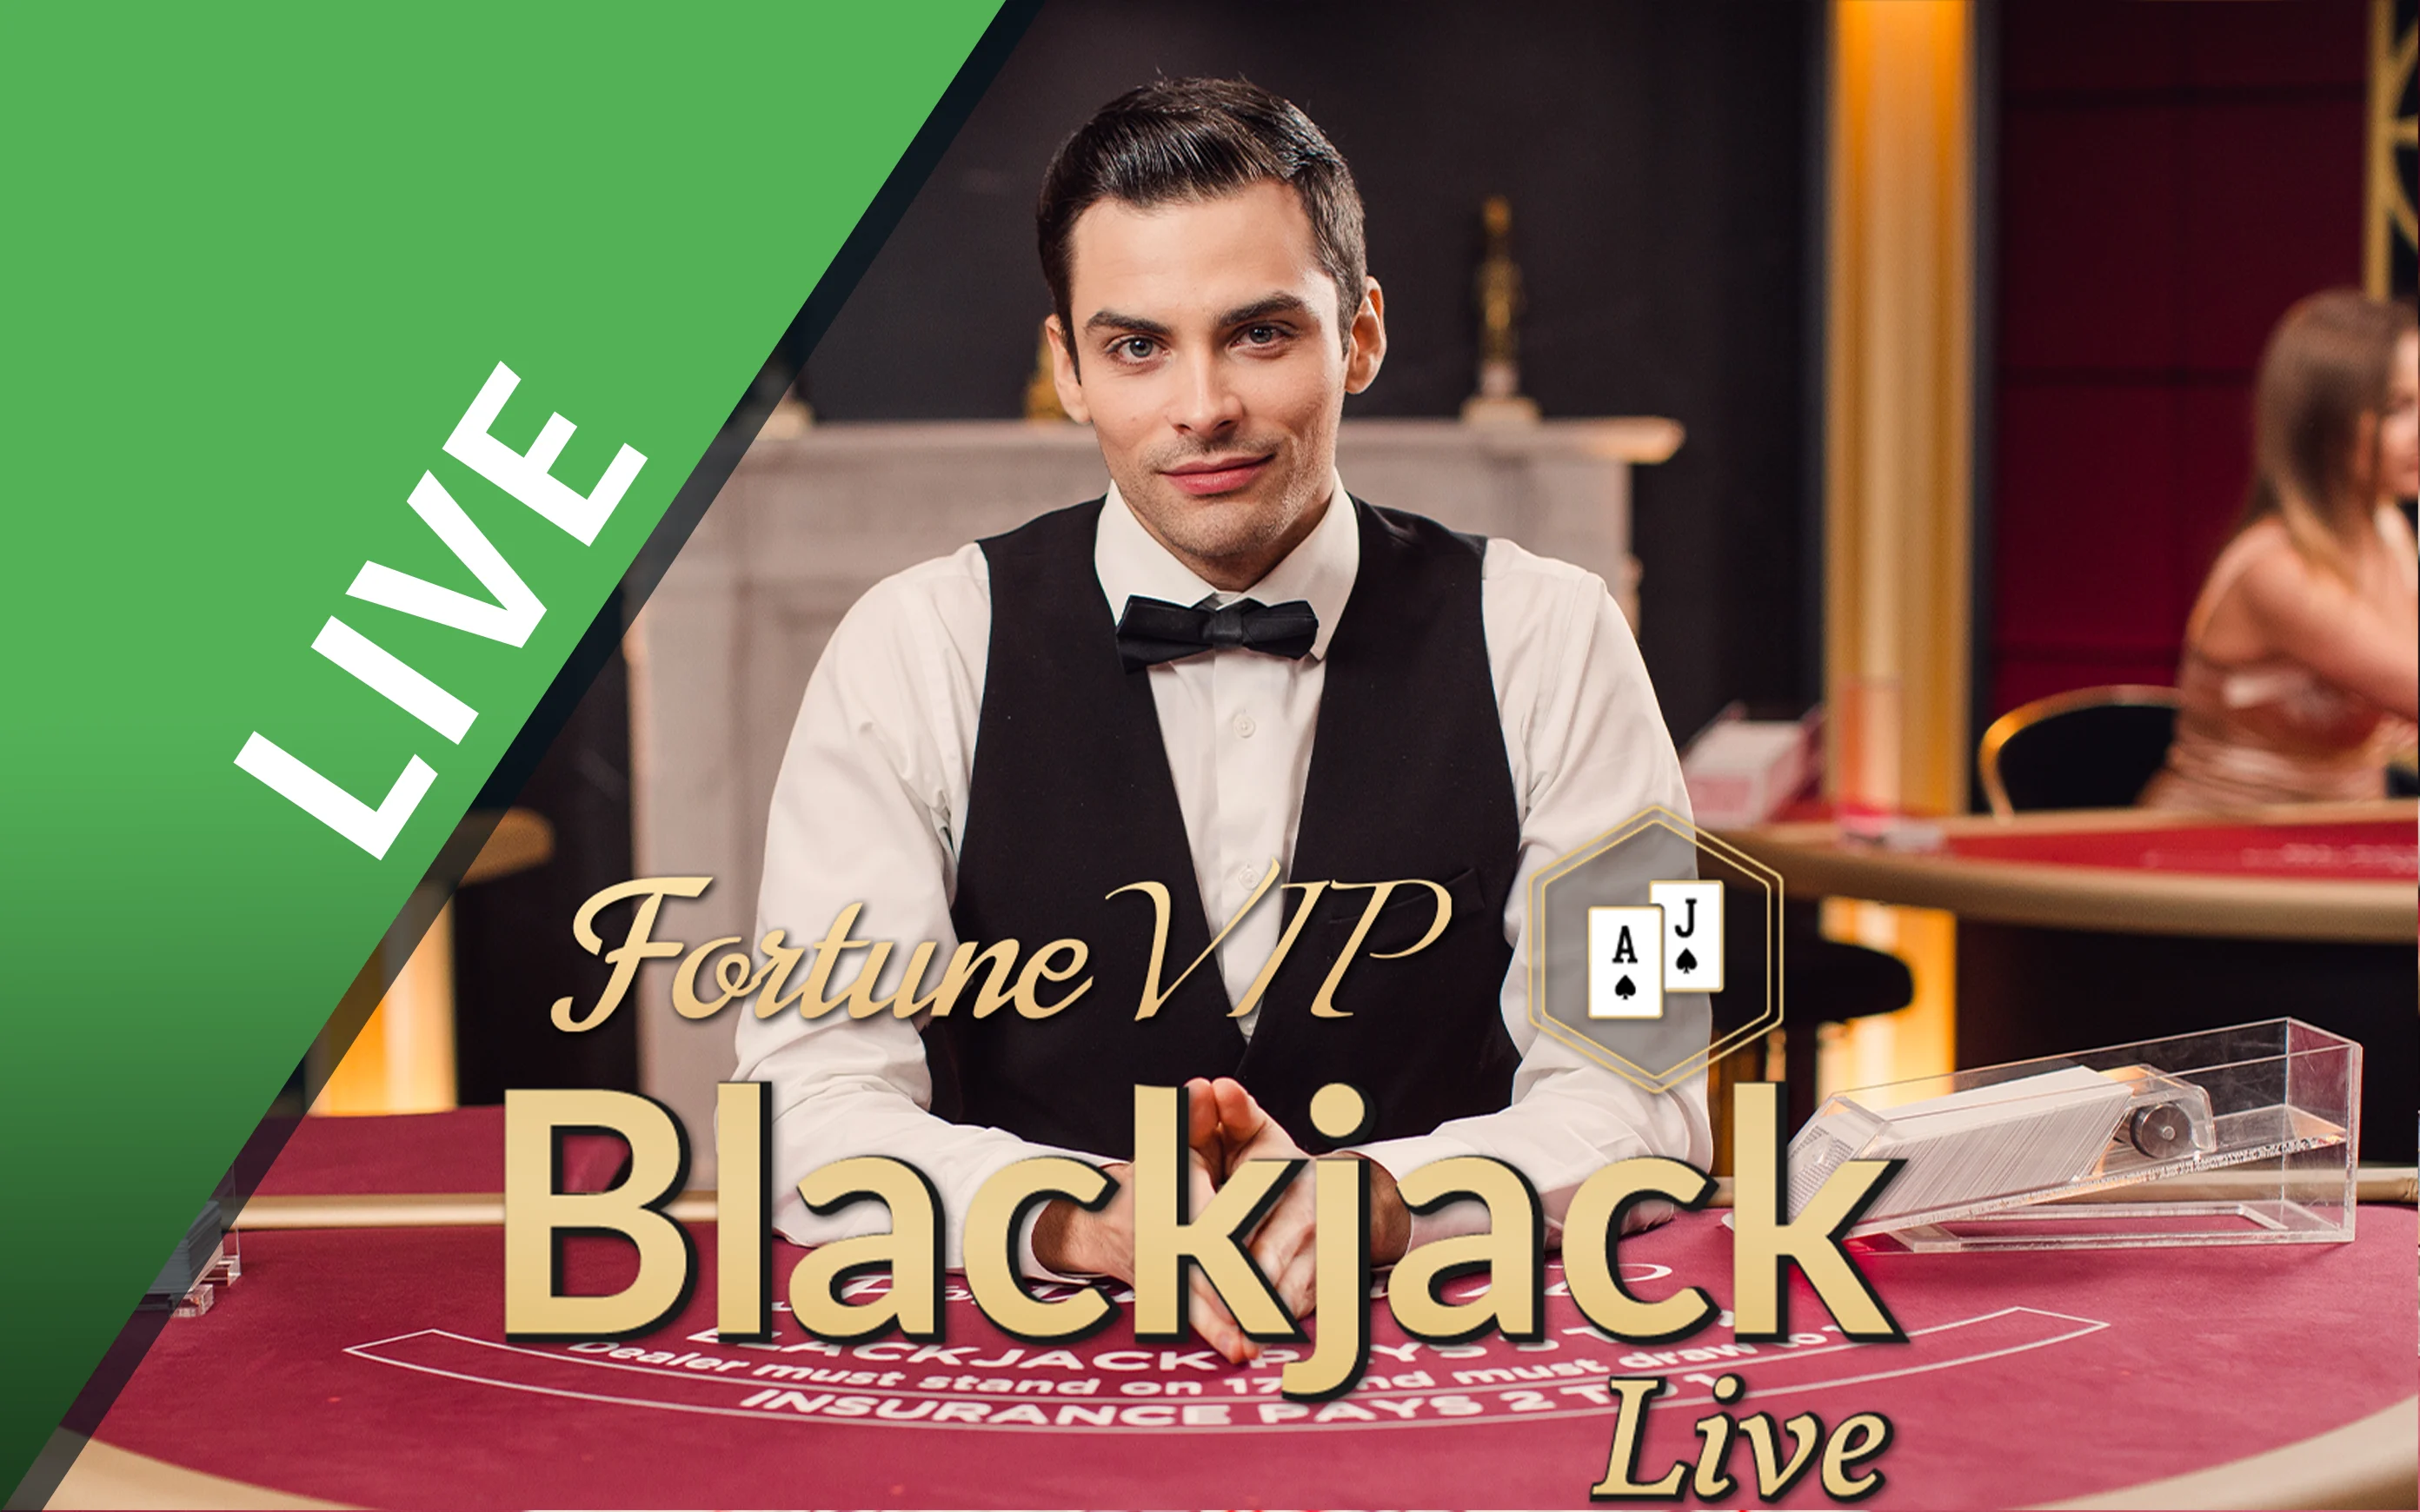 Starcasino.be online casino üzerinden Blackjack Fortune VIP oynayın